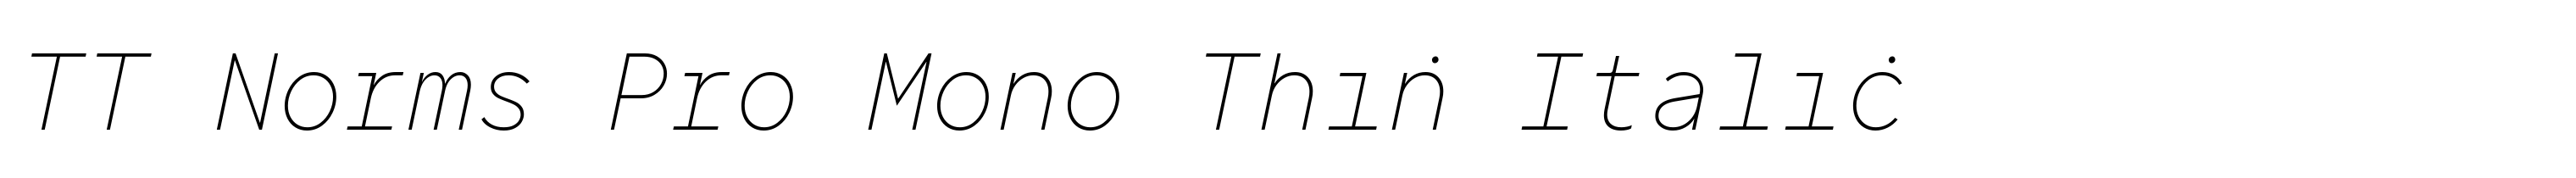 TT Norms Pro Mono Thin Italic